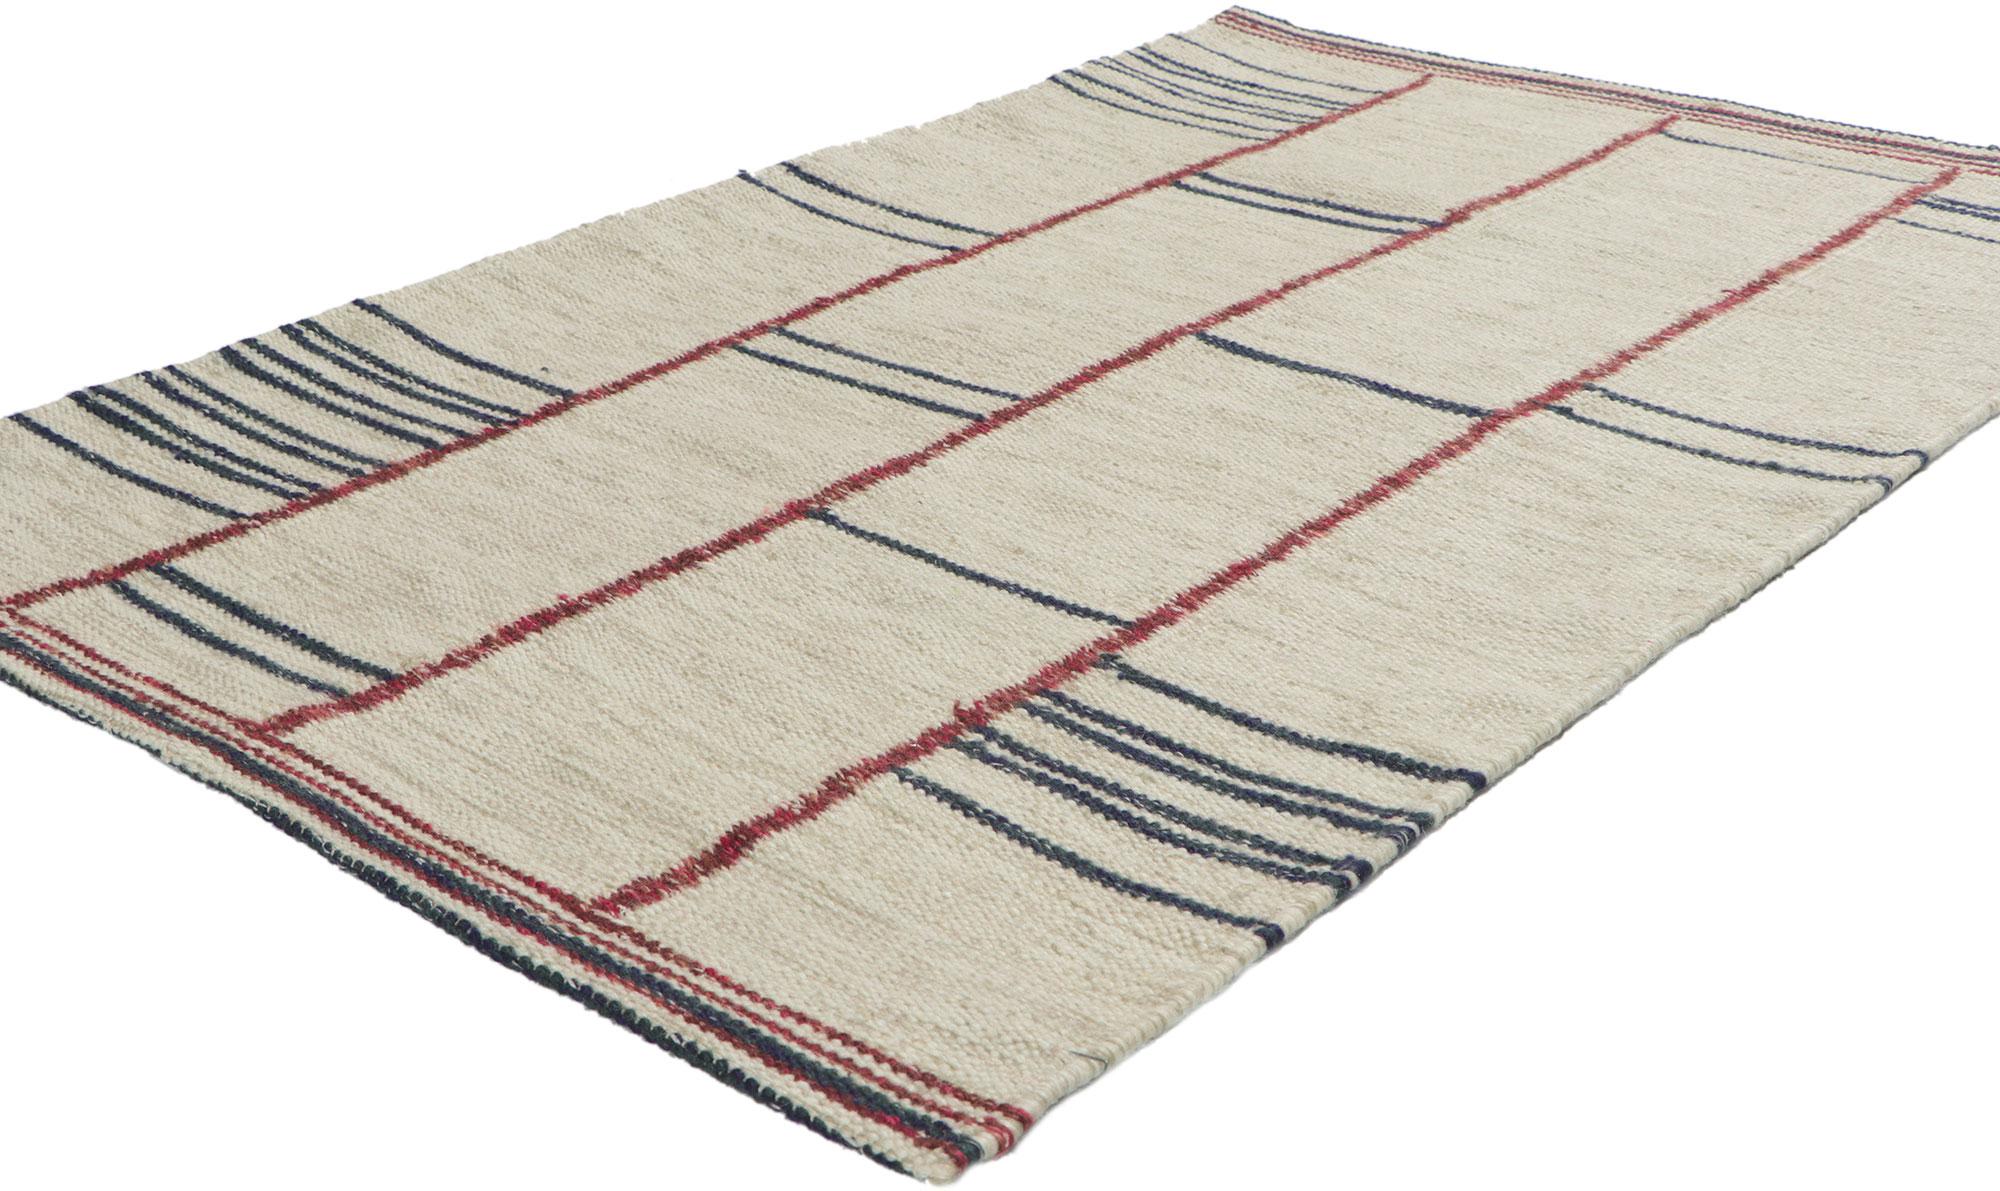 30805 New Swedish Inspired Kilim rug 03'00 x 04'10. Avec sa forme artistique linéaire et son asymétrie bien équilibrée, ce tapis Rug & Kilim en laine tissée à la main, d'inspiration suédoise, procure une sensation de contentement douillet sans